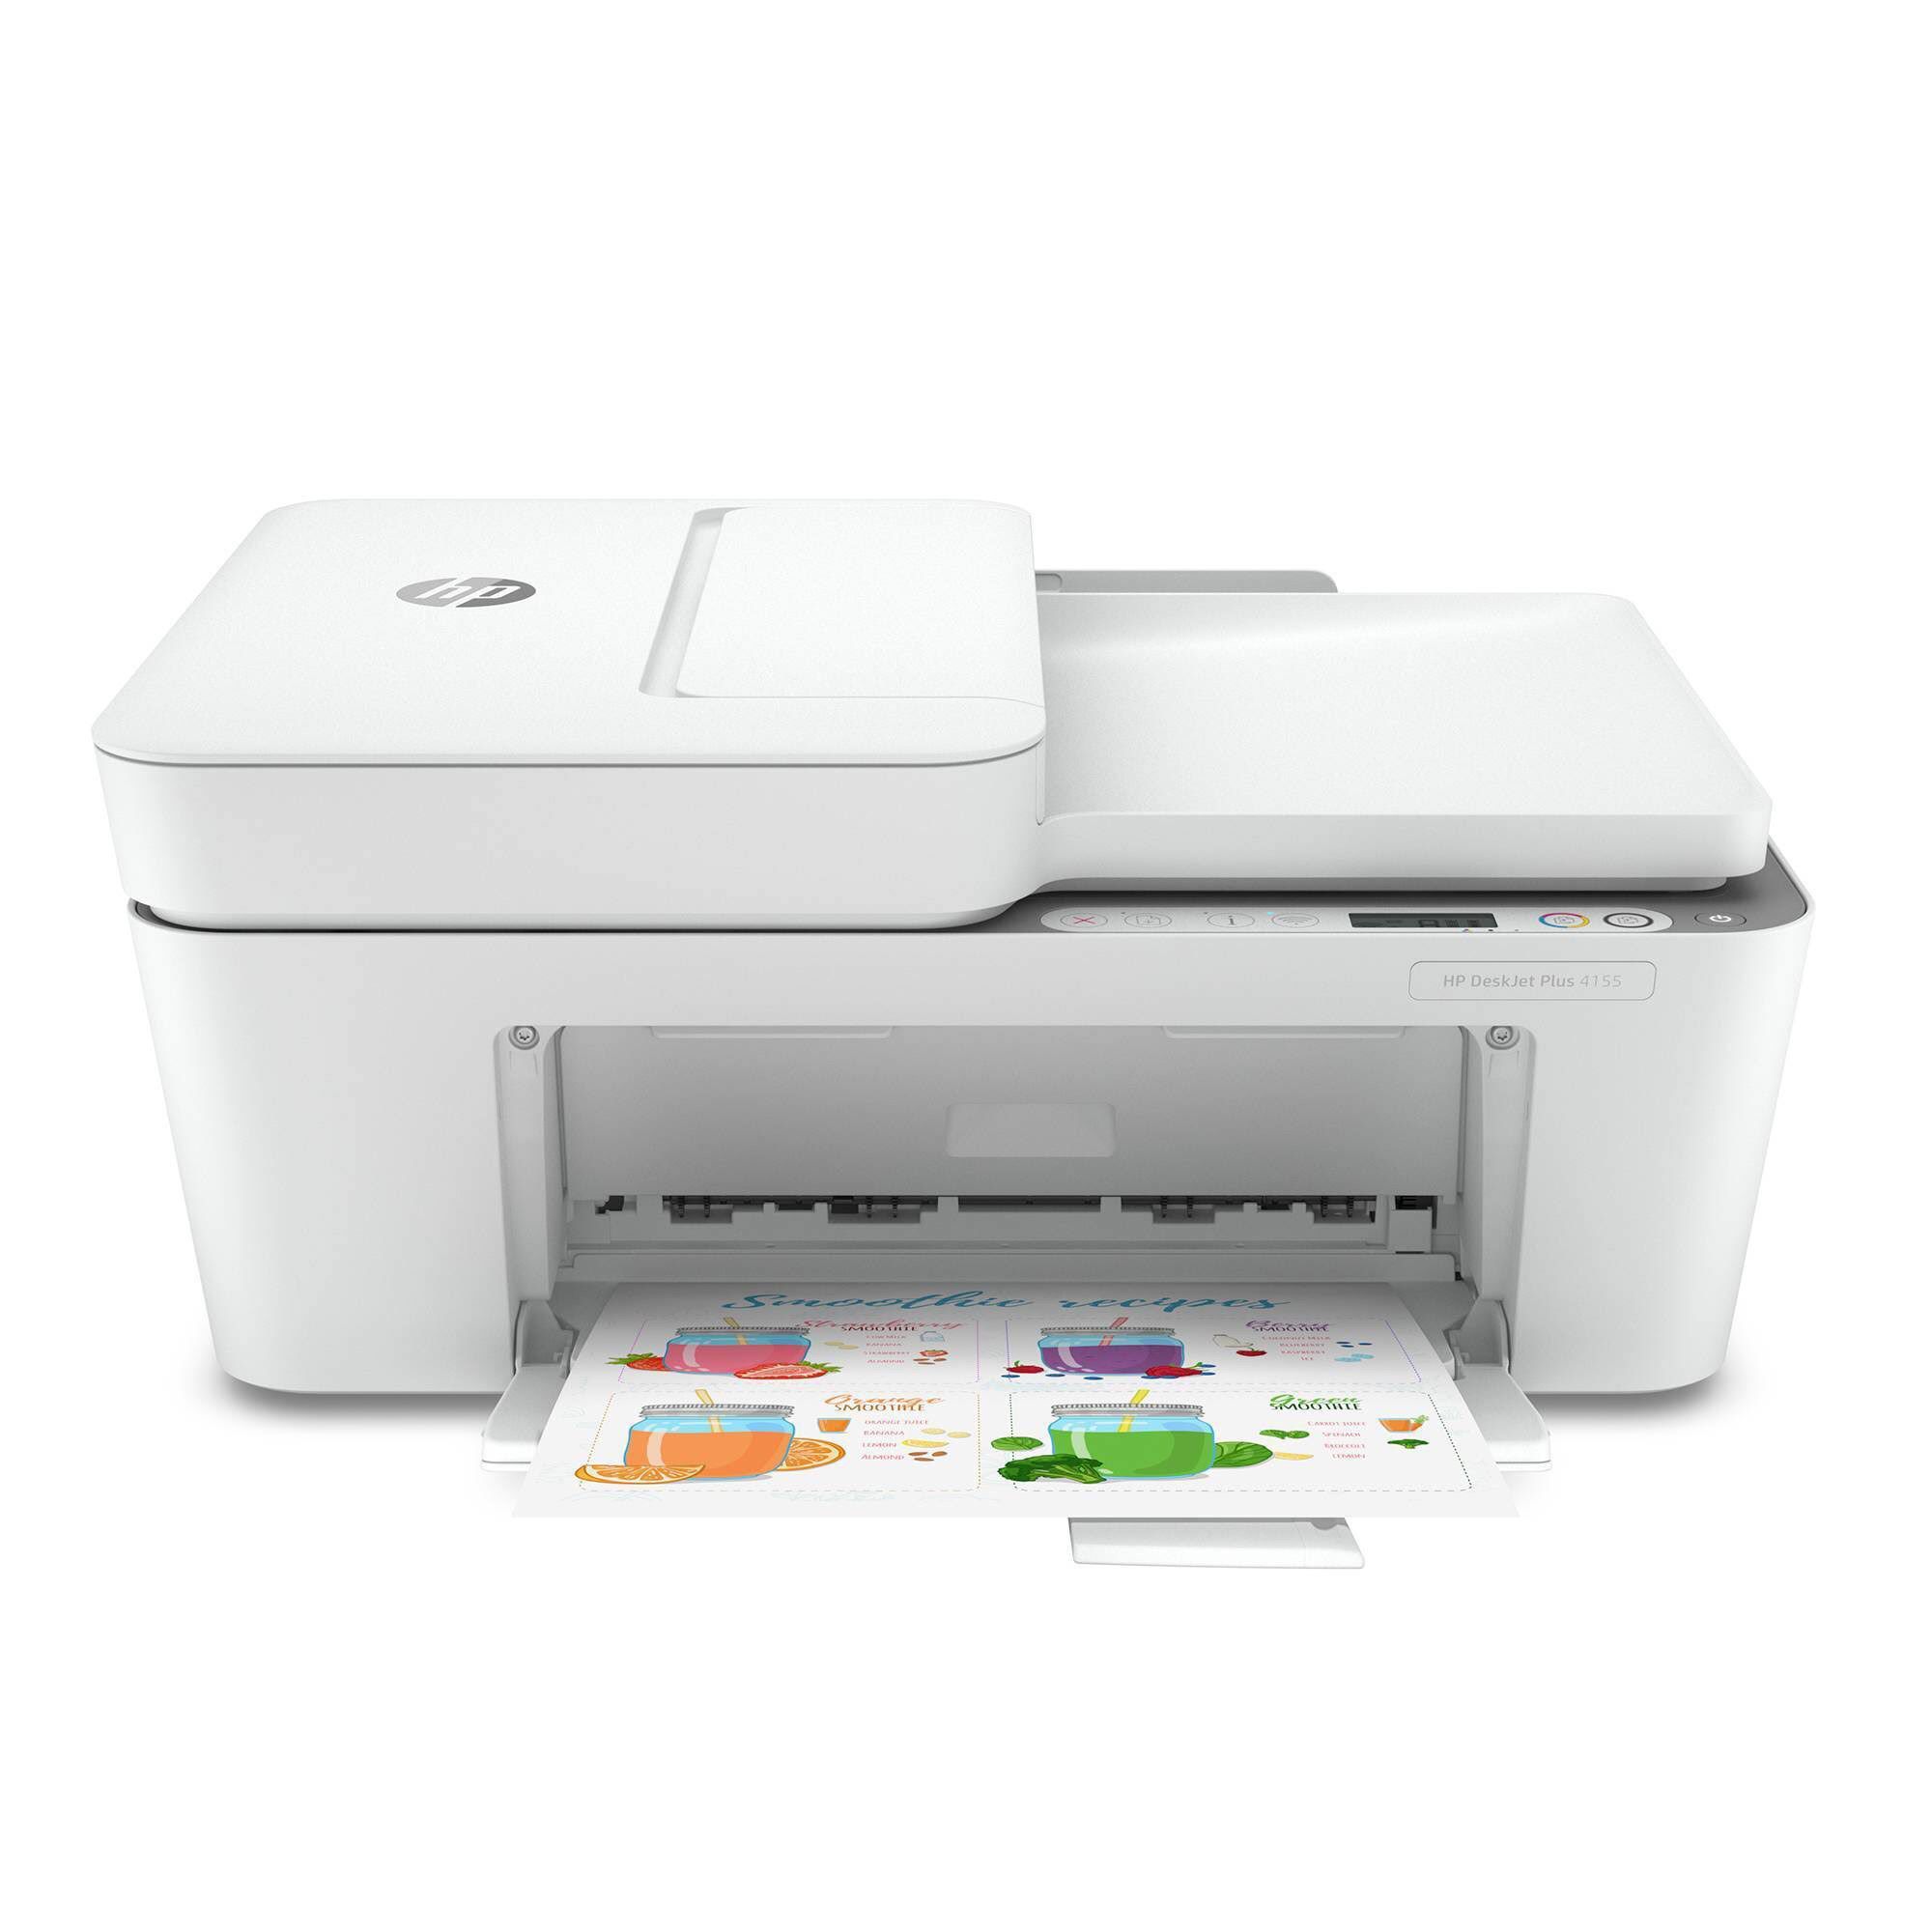 Hp DeskJet Plus 4155 All-in-one Wireless Printer